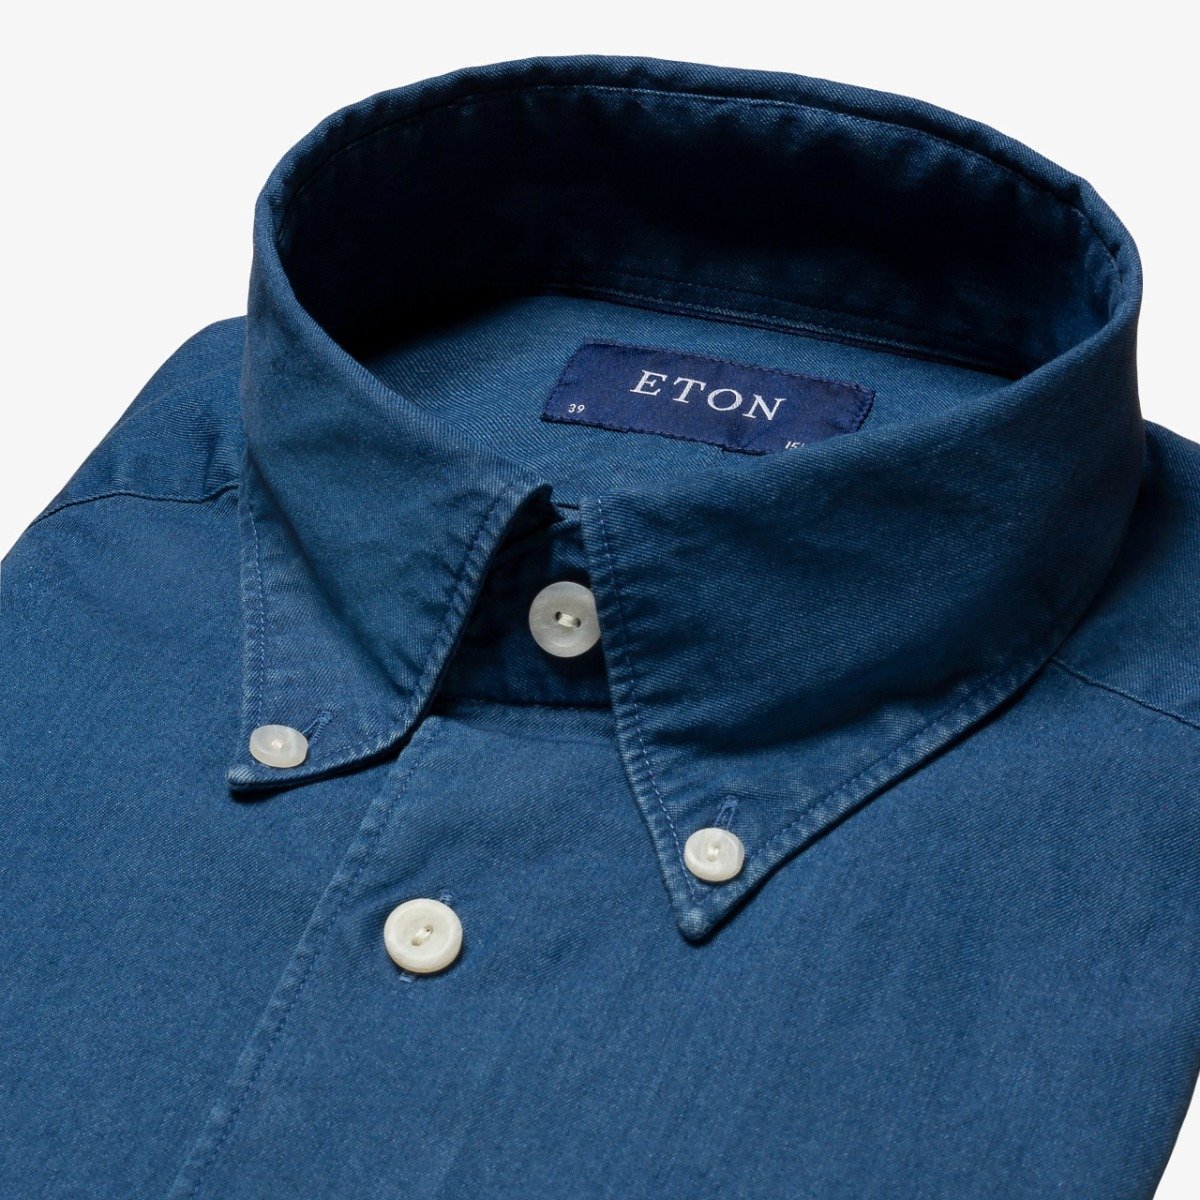 Eton navy slim fit lightweight denim twill men's casual shirt - Button down collar